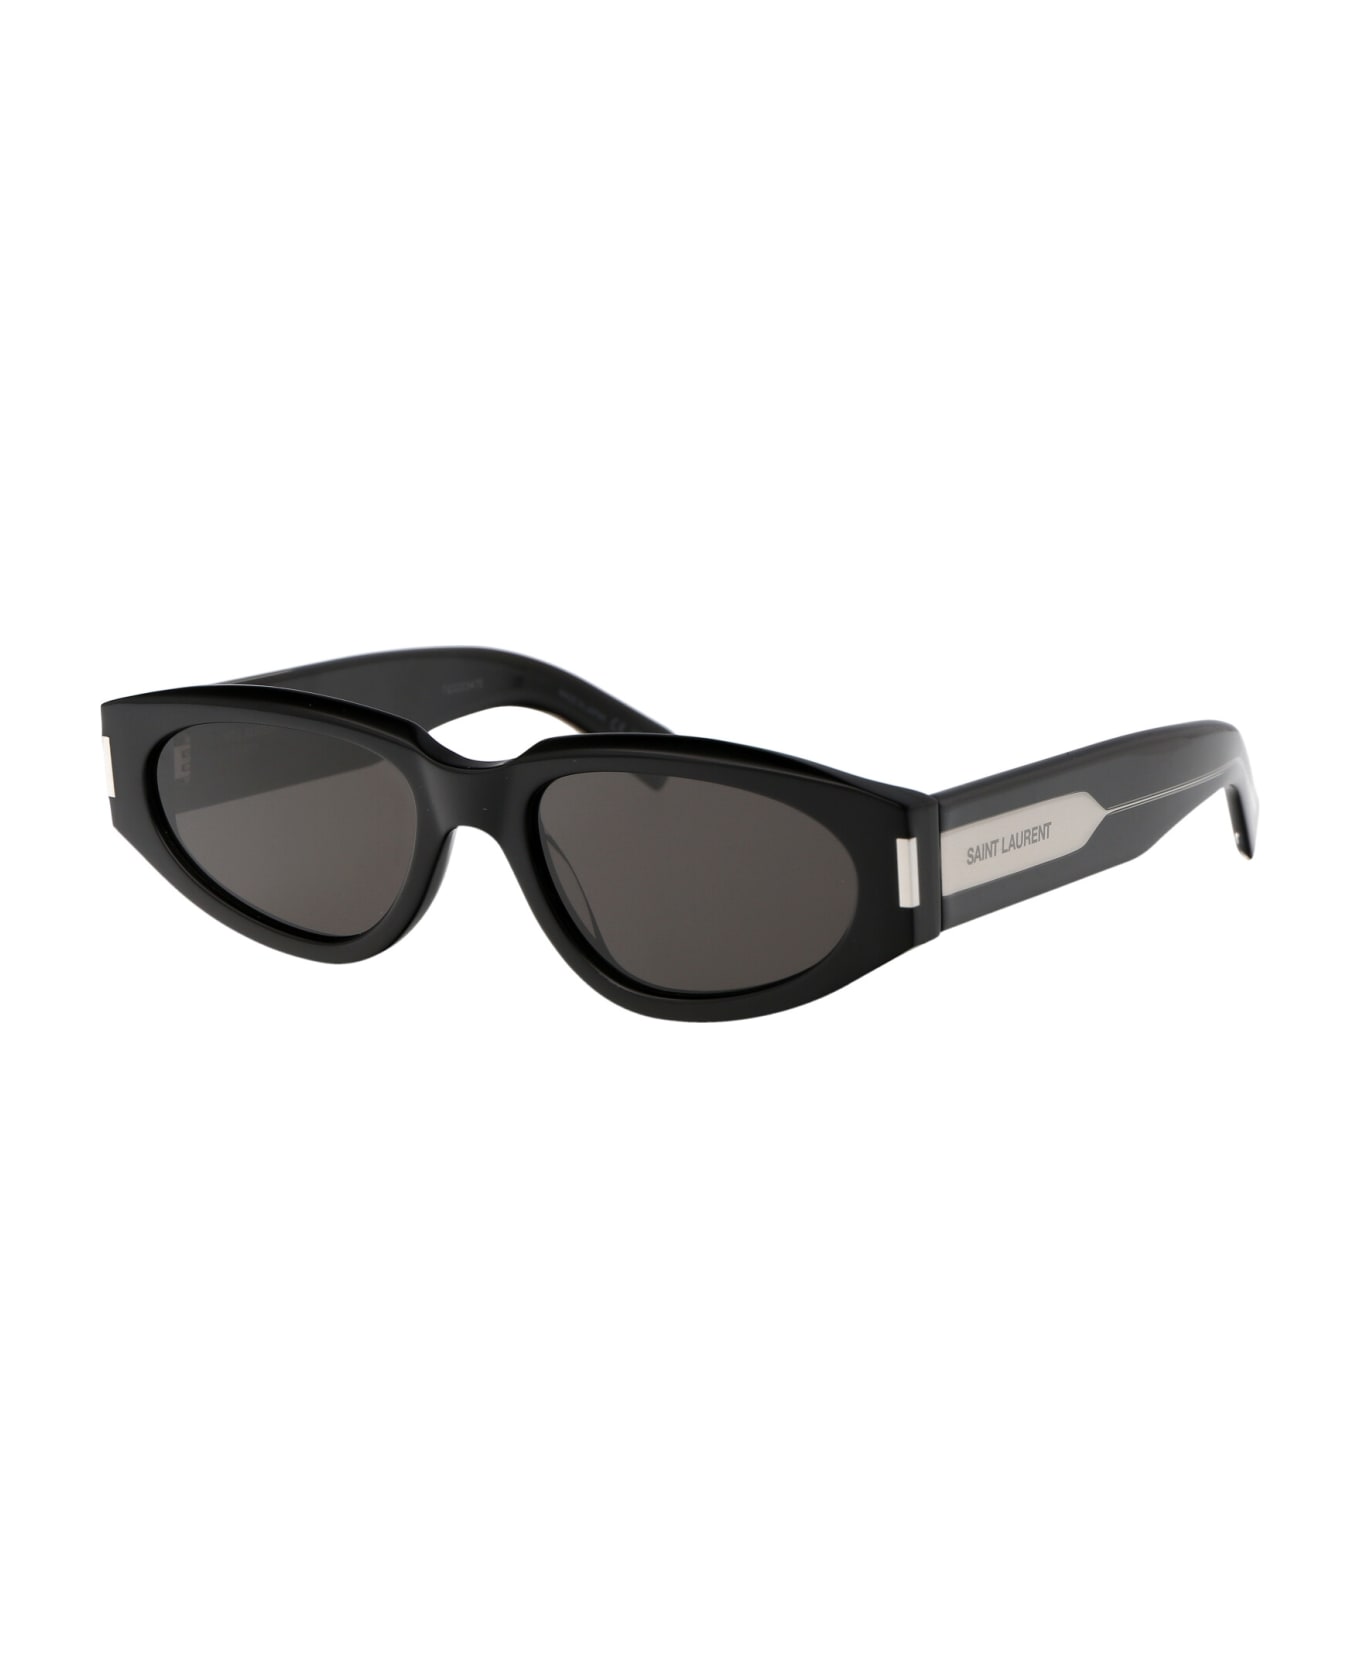 Saint Laurent Eyewear Sl 618 Sunglasses - 001 BLACK CRYSTAL BLACK サングラス